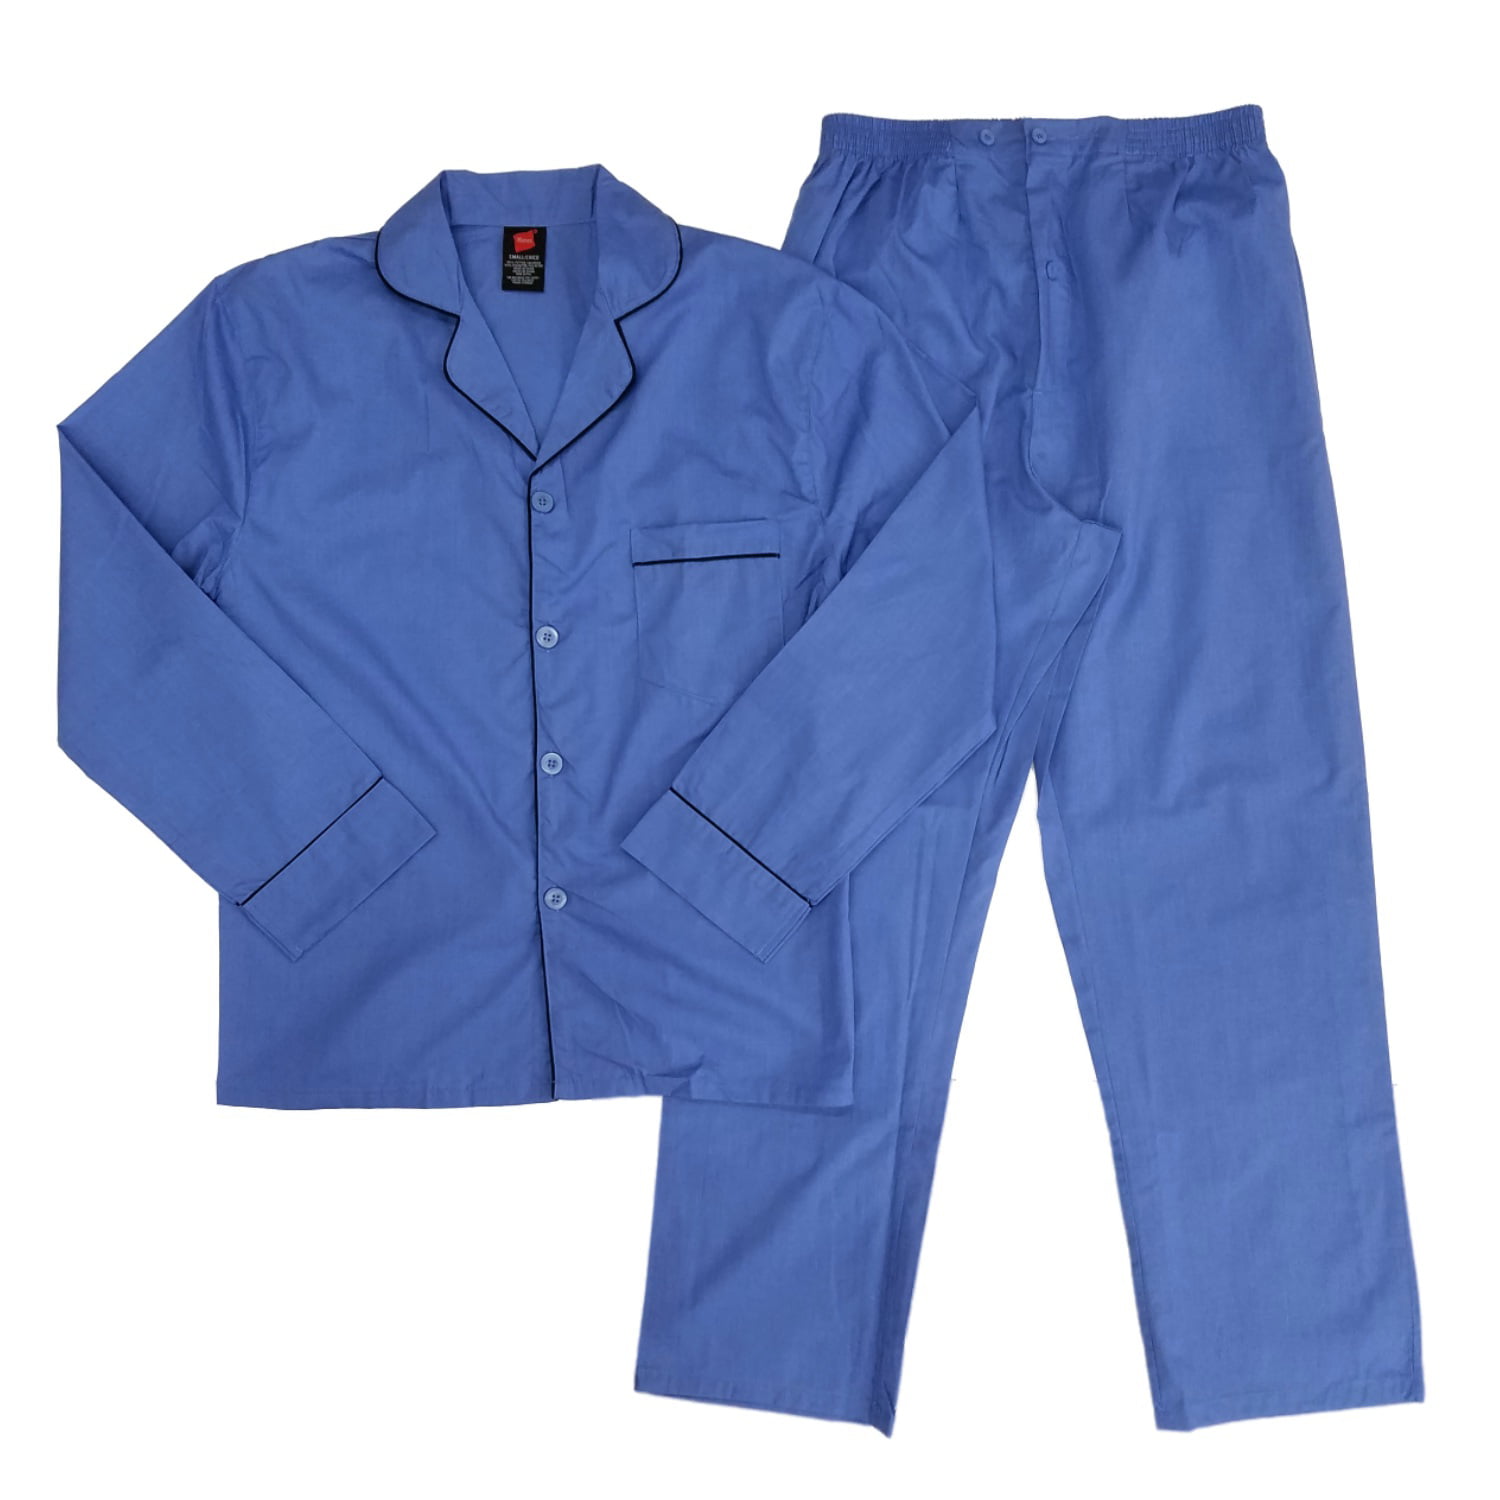 Details about   Hanes Pajama Set Blue 